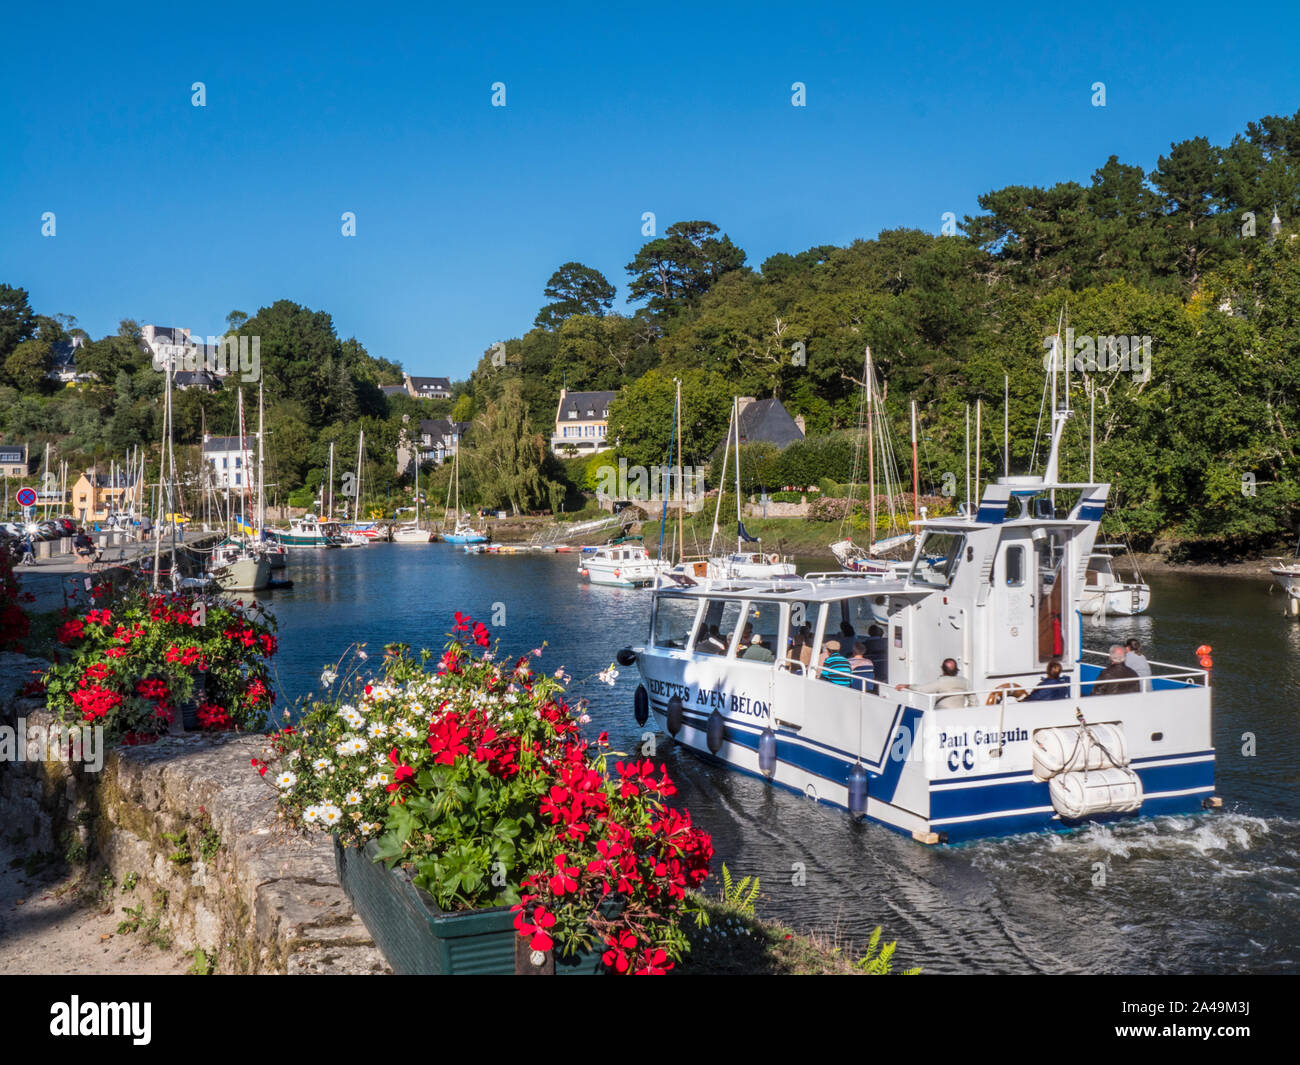 Gâvres Bretagne Szene mit Port Belon Fähre & Segeln Boote und Häuser am Ufer des Flusses Aven Finistère in der Bretagne Frankreich Stockfoto